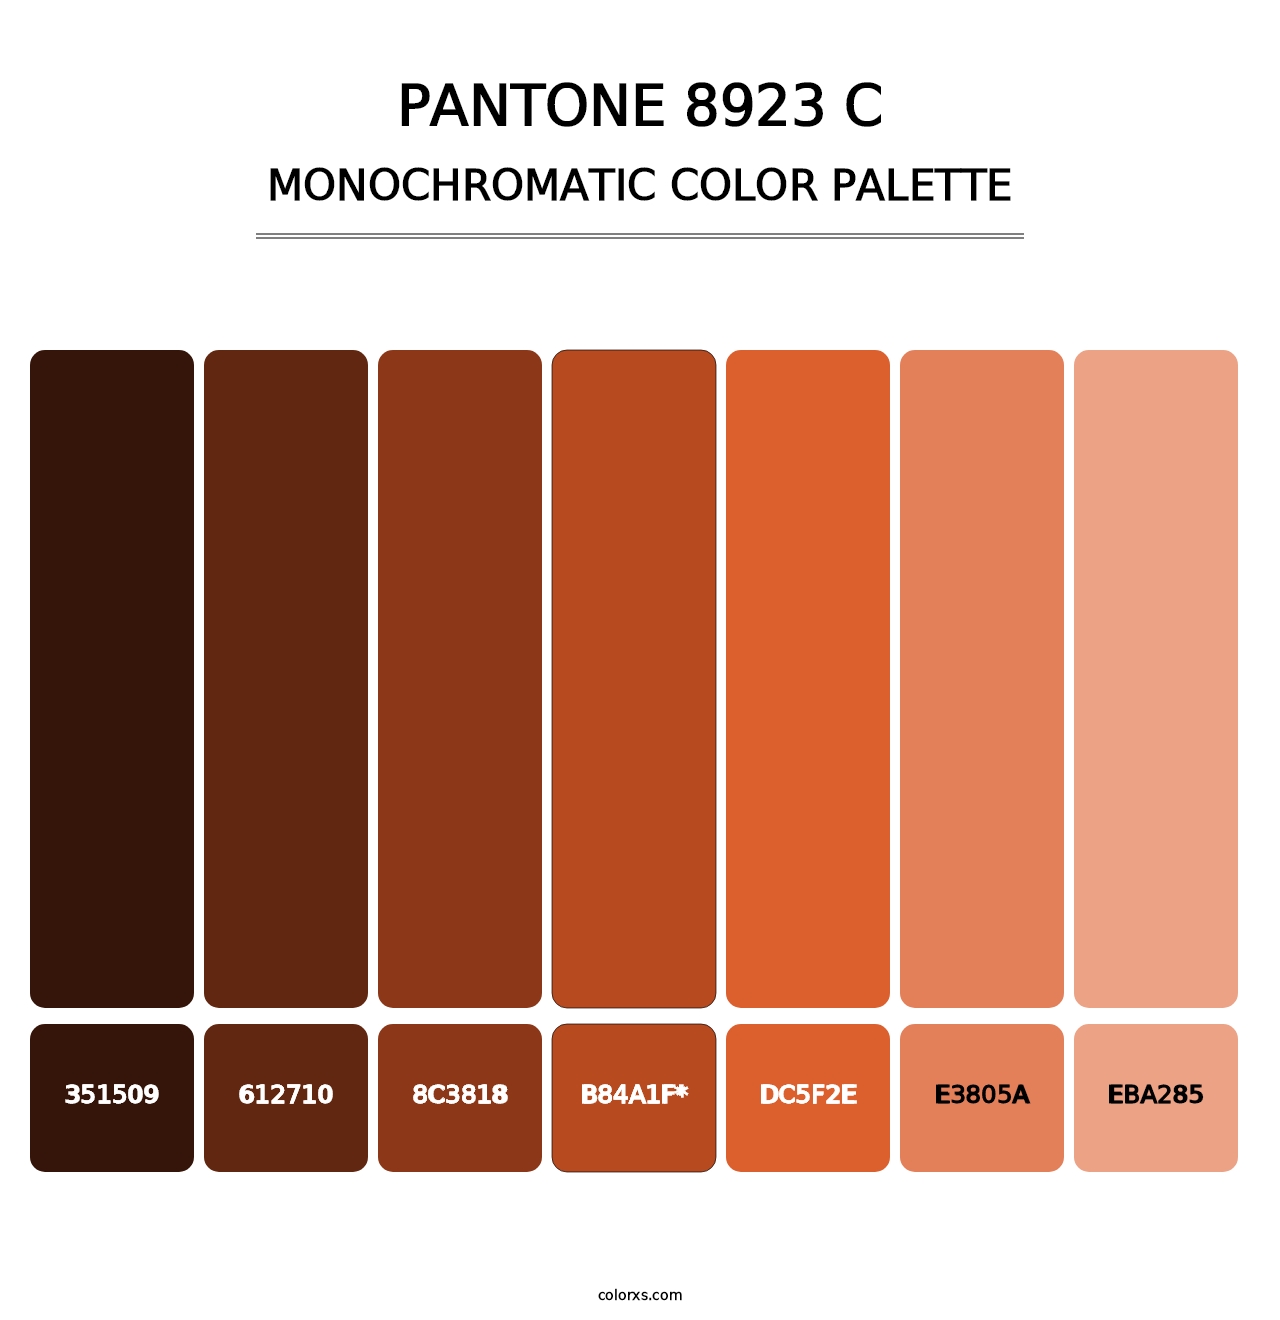 PANTONE 8923 C - Monochromatic Color Palette